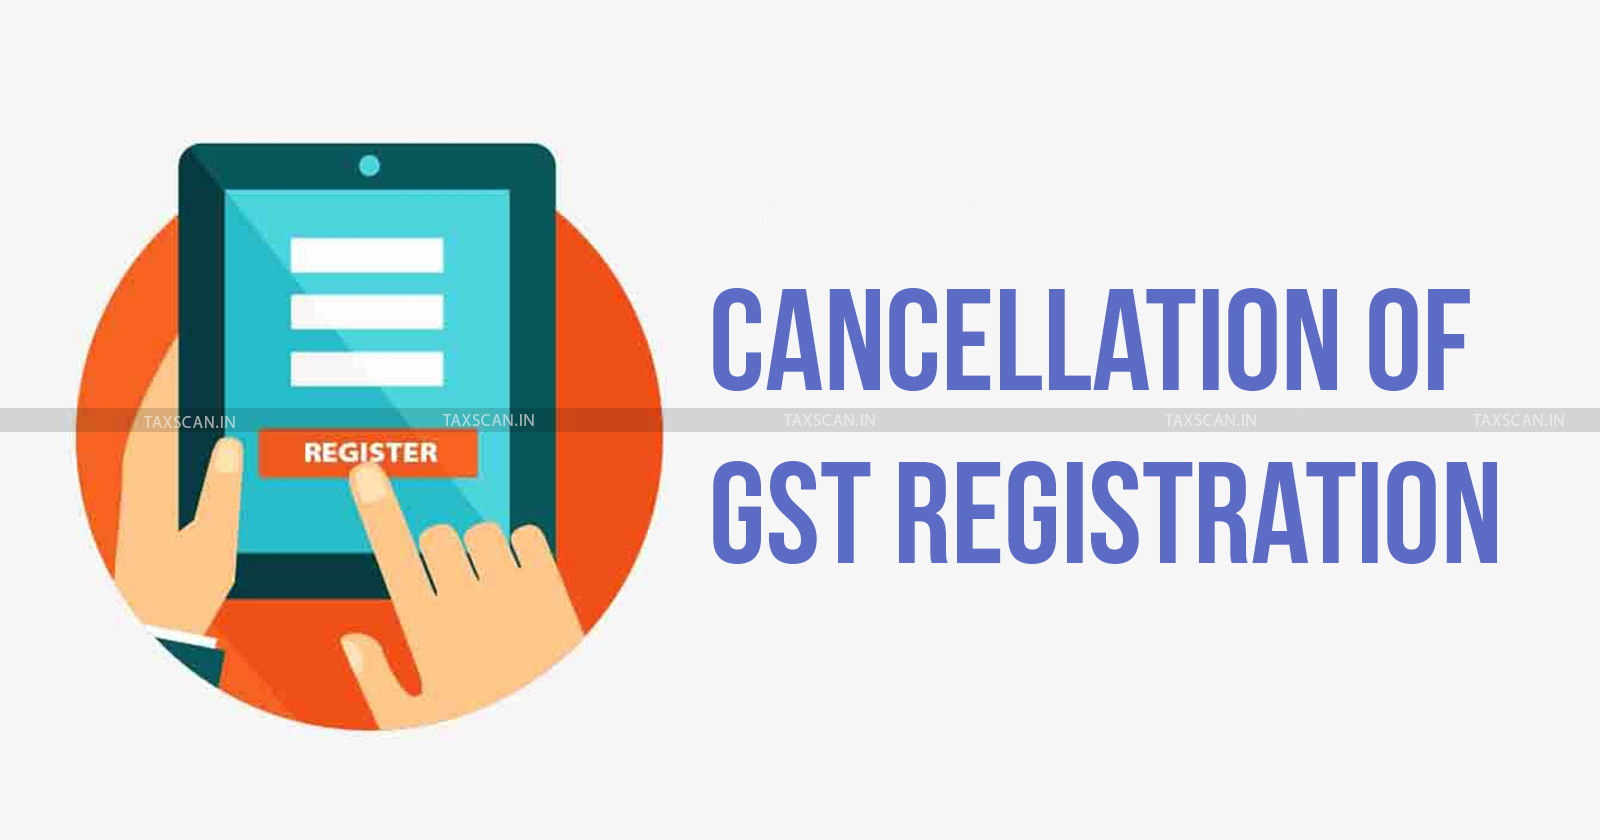 GST - GST Registration - Retrospective GST cancellation - GST cancellation - Delhi High Court - taxscan